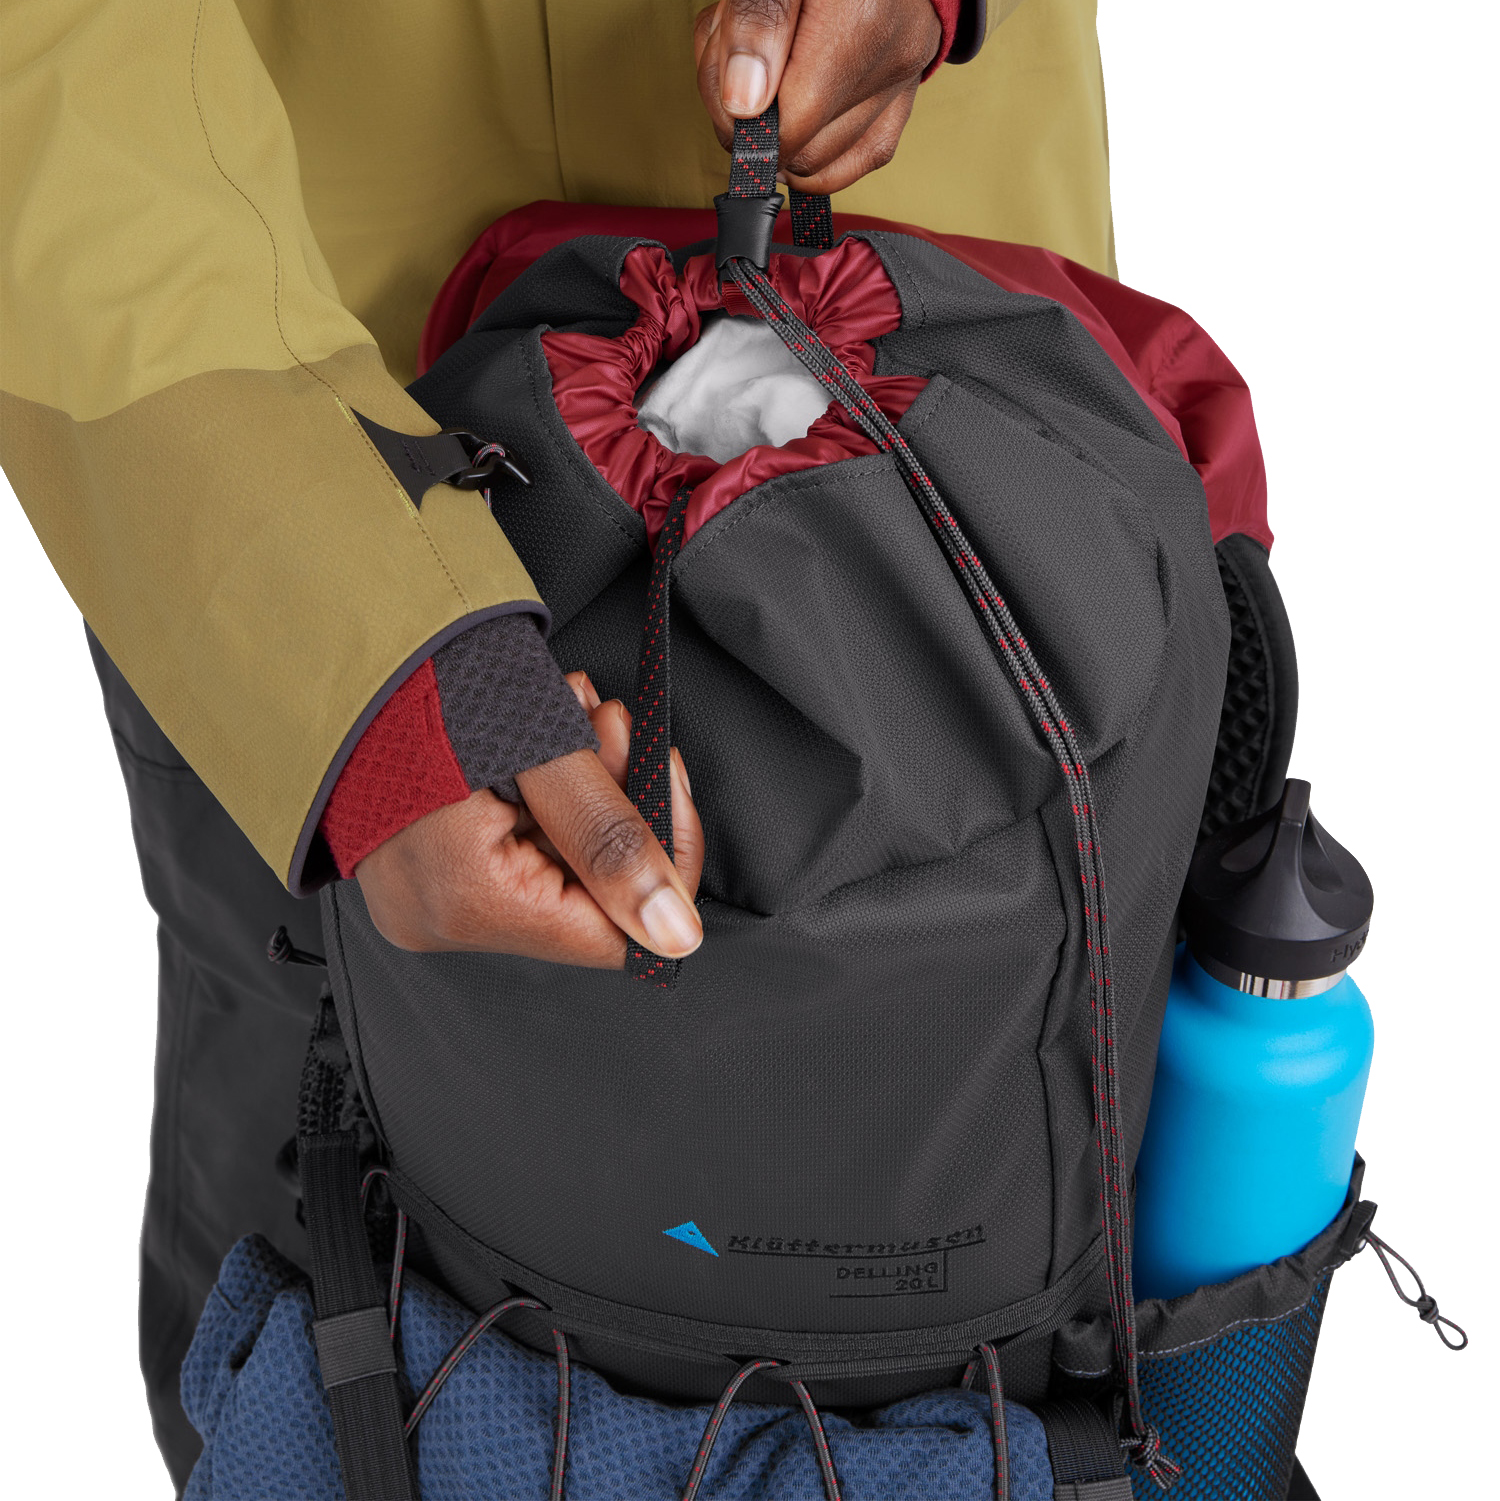 Klattermusen Delling 25 Hiking Backpack